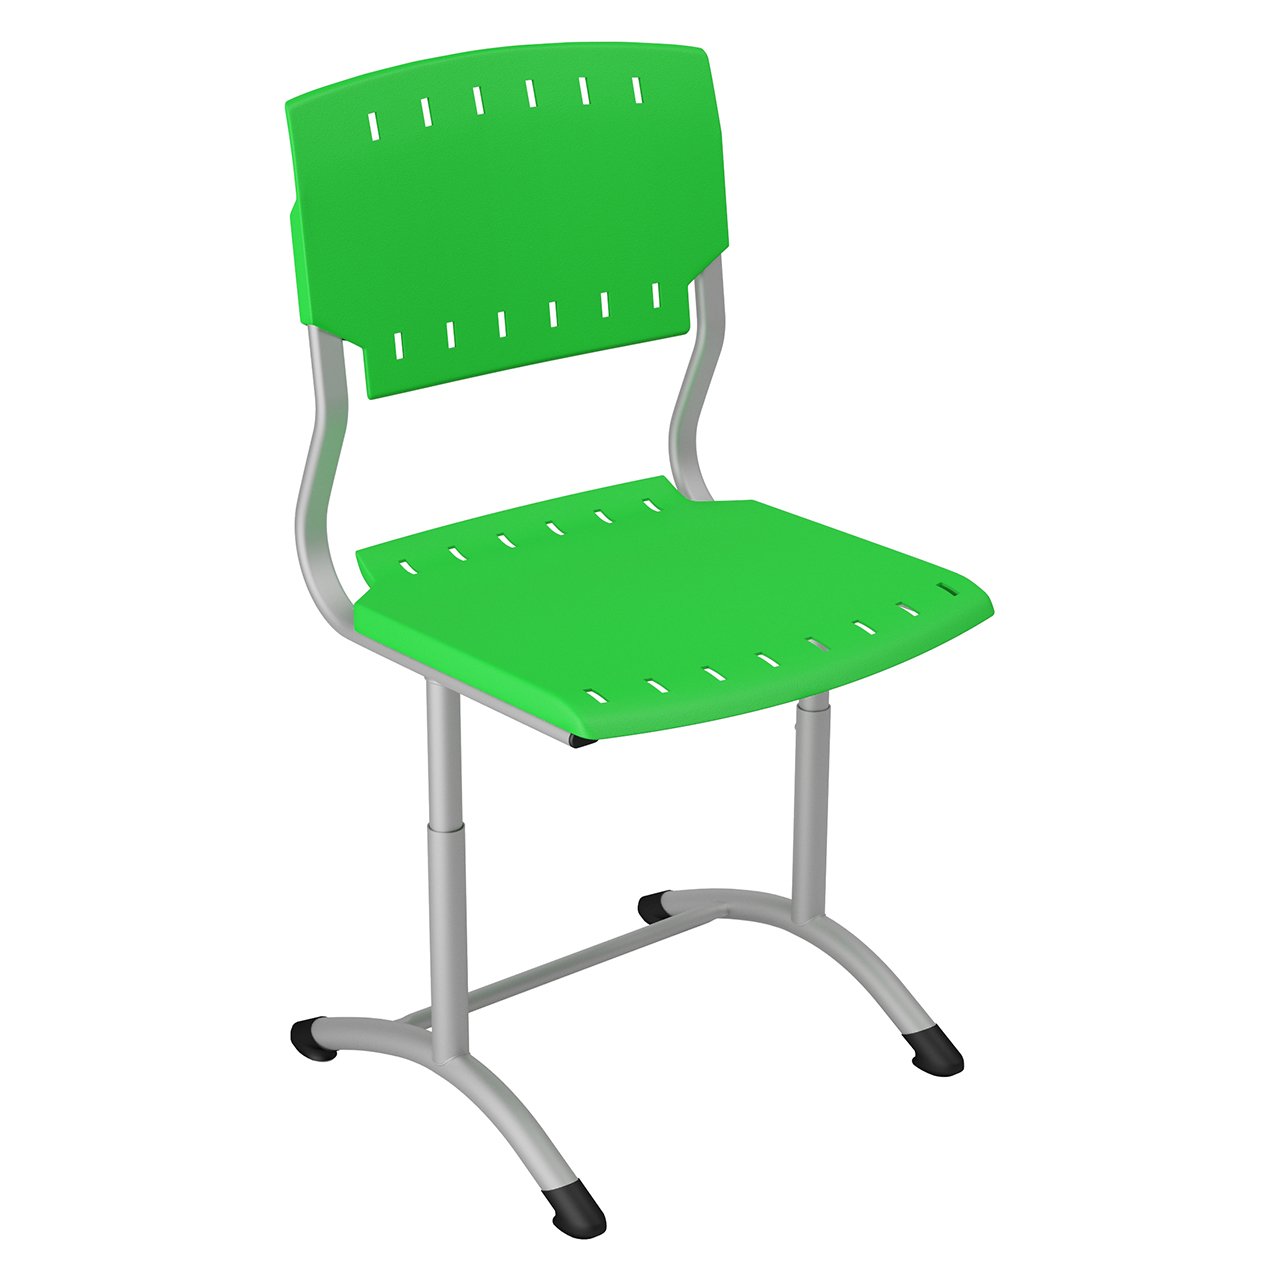 детский школьный стул для дома